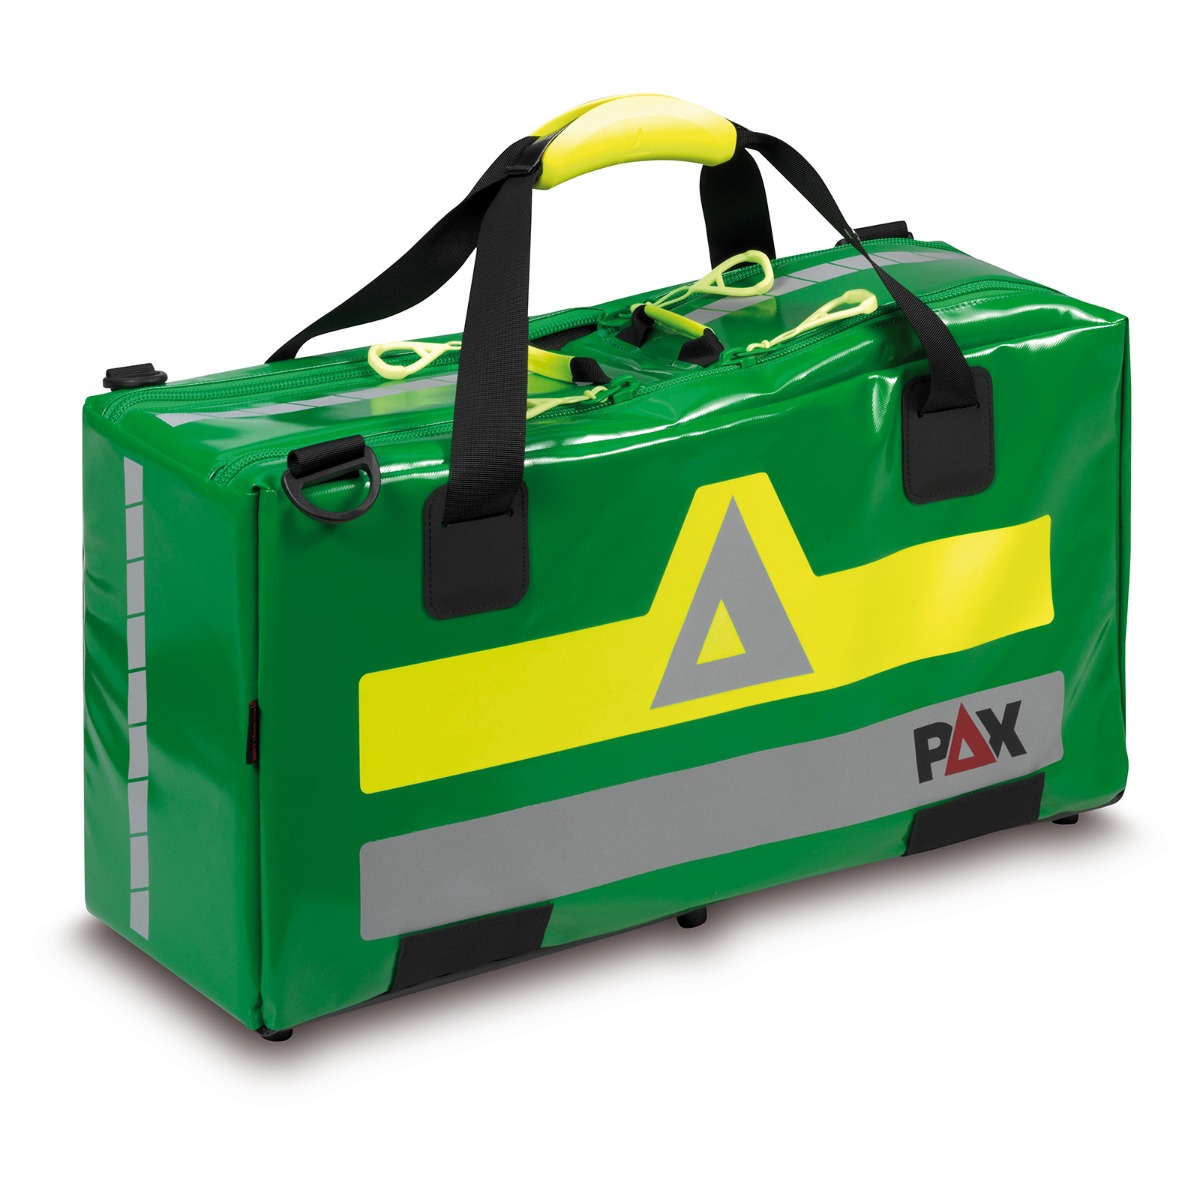 Kompakte Sauerstofftasche von PAX - FS-Medizintechnik